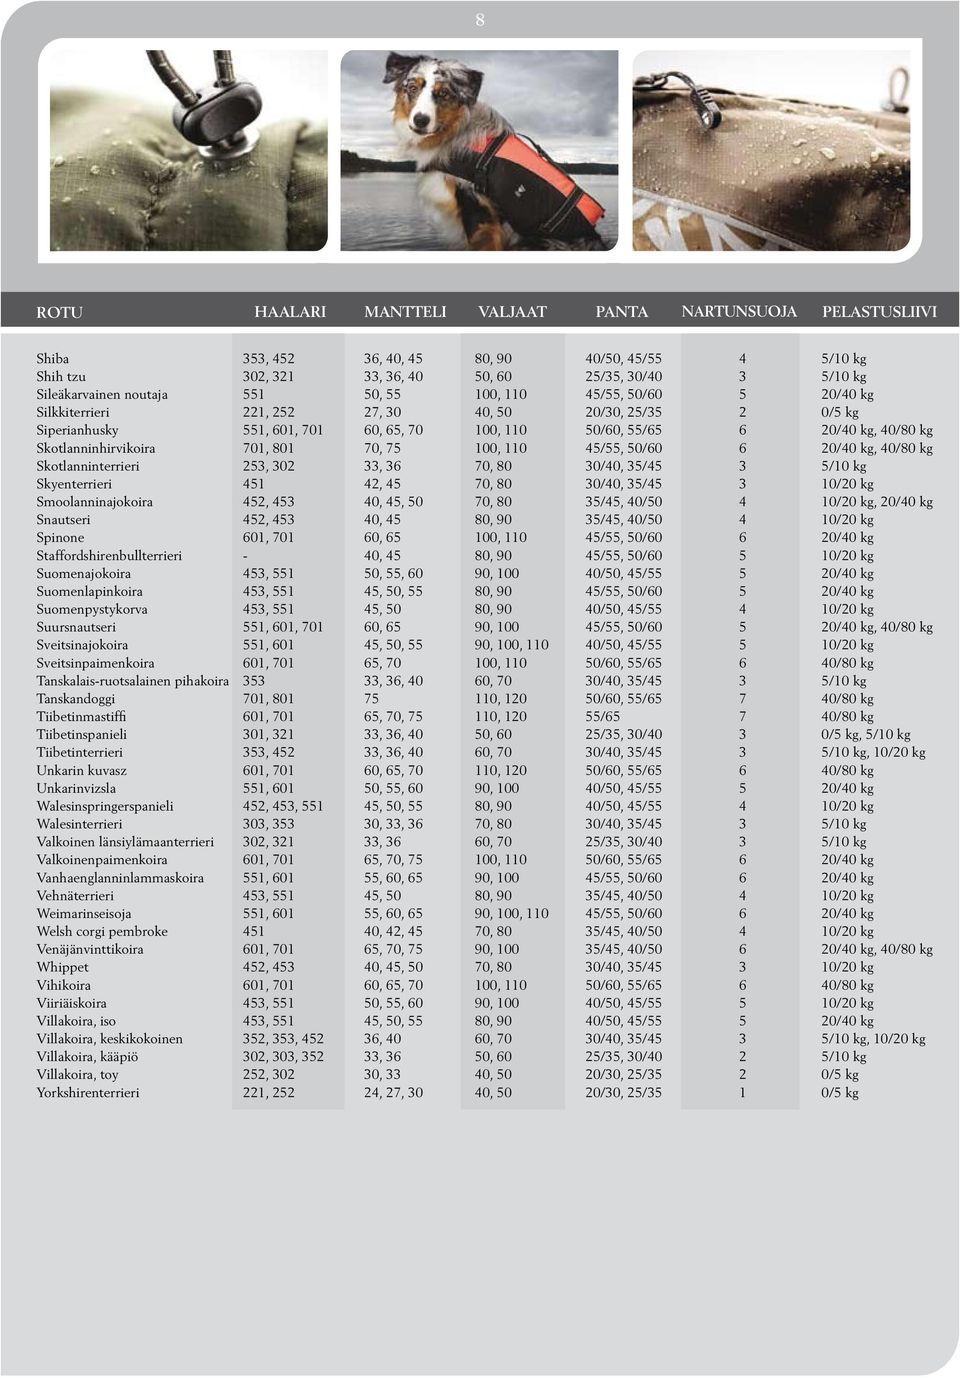 Tanskandoggi Tiibetinmastiffi Tiibetinspanieli Tiibetinterrieri Unkarin kuvasz Unkarinvizsla Walesinspringerspanieli Walesinterrieri Valkoinen länsiylämaanterrieri Valkoinenpaimenkoira